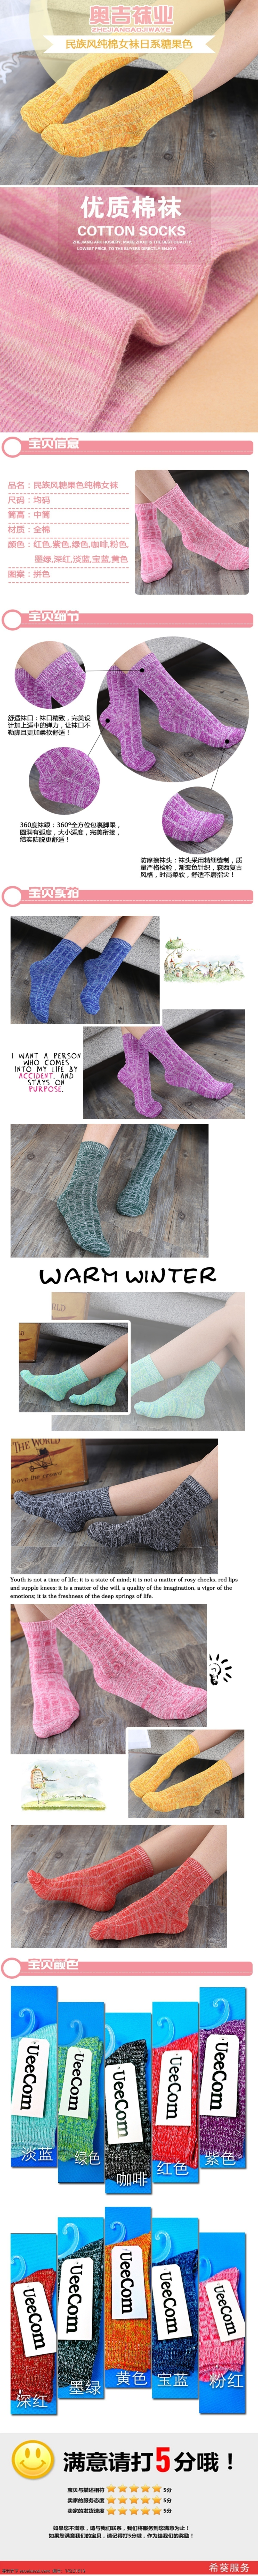 冬季 糖果 色 棉袜 淘宝 详情 袜子 原创设计 原创淘宝设计